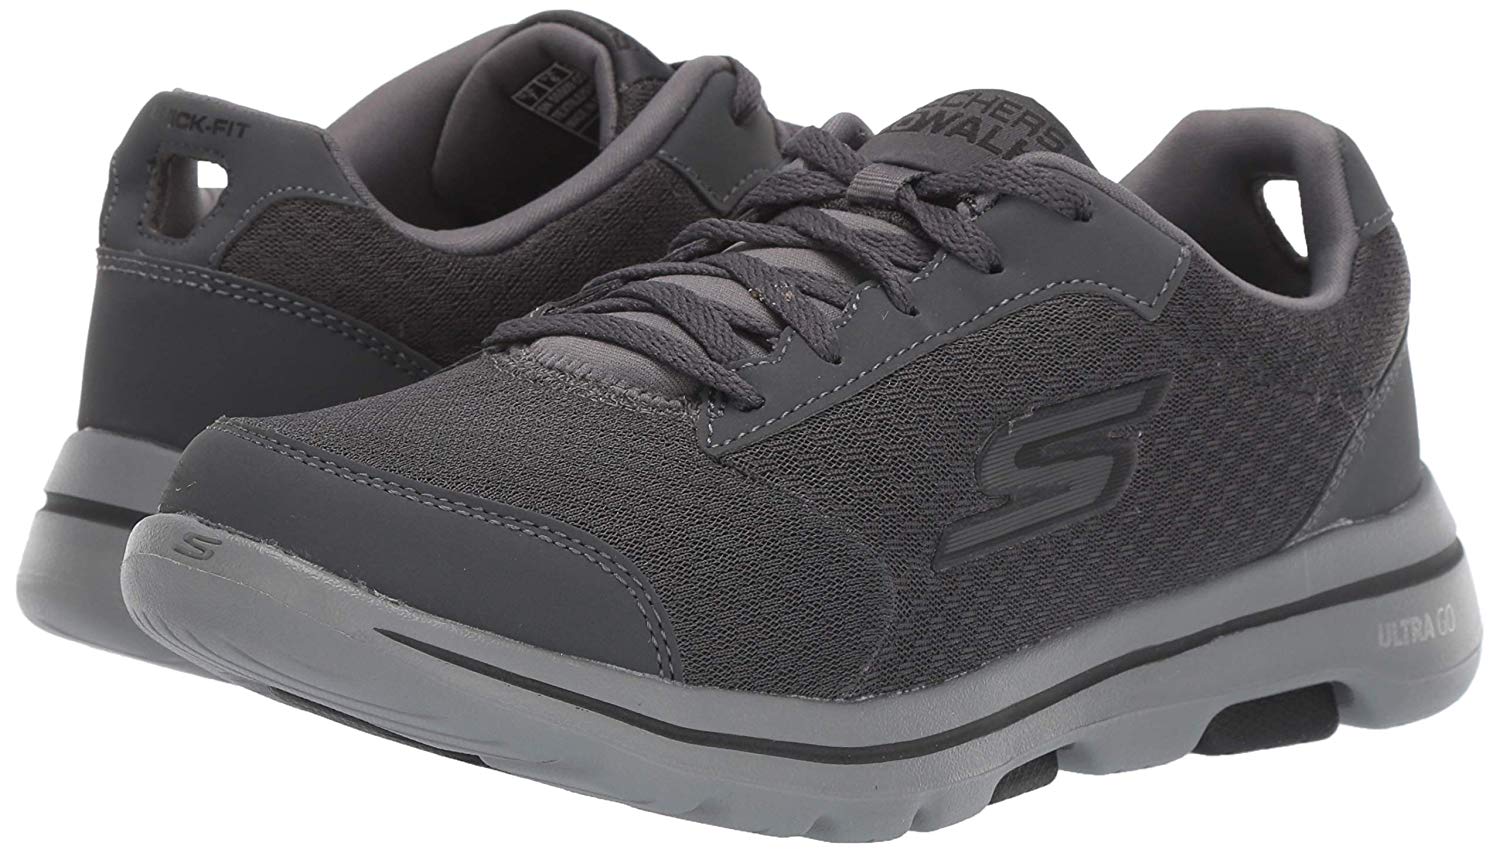 Skechers Men's Go Walk 5-Qualify Sneaker, Charcoal/Black, Size 15.0 ...